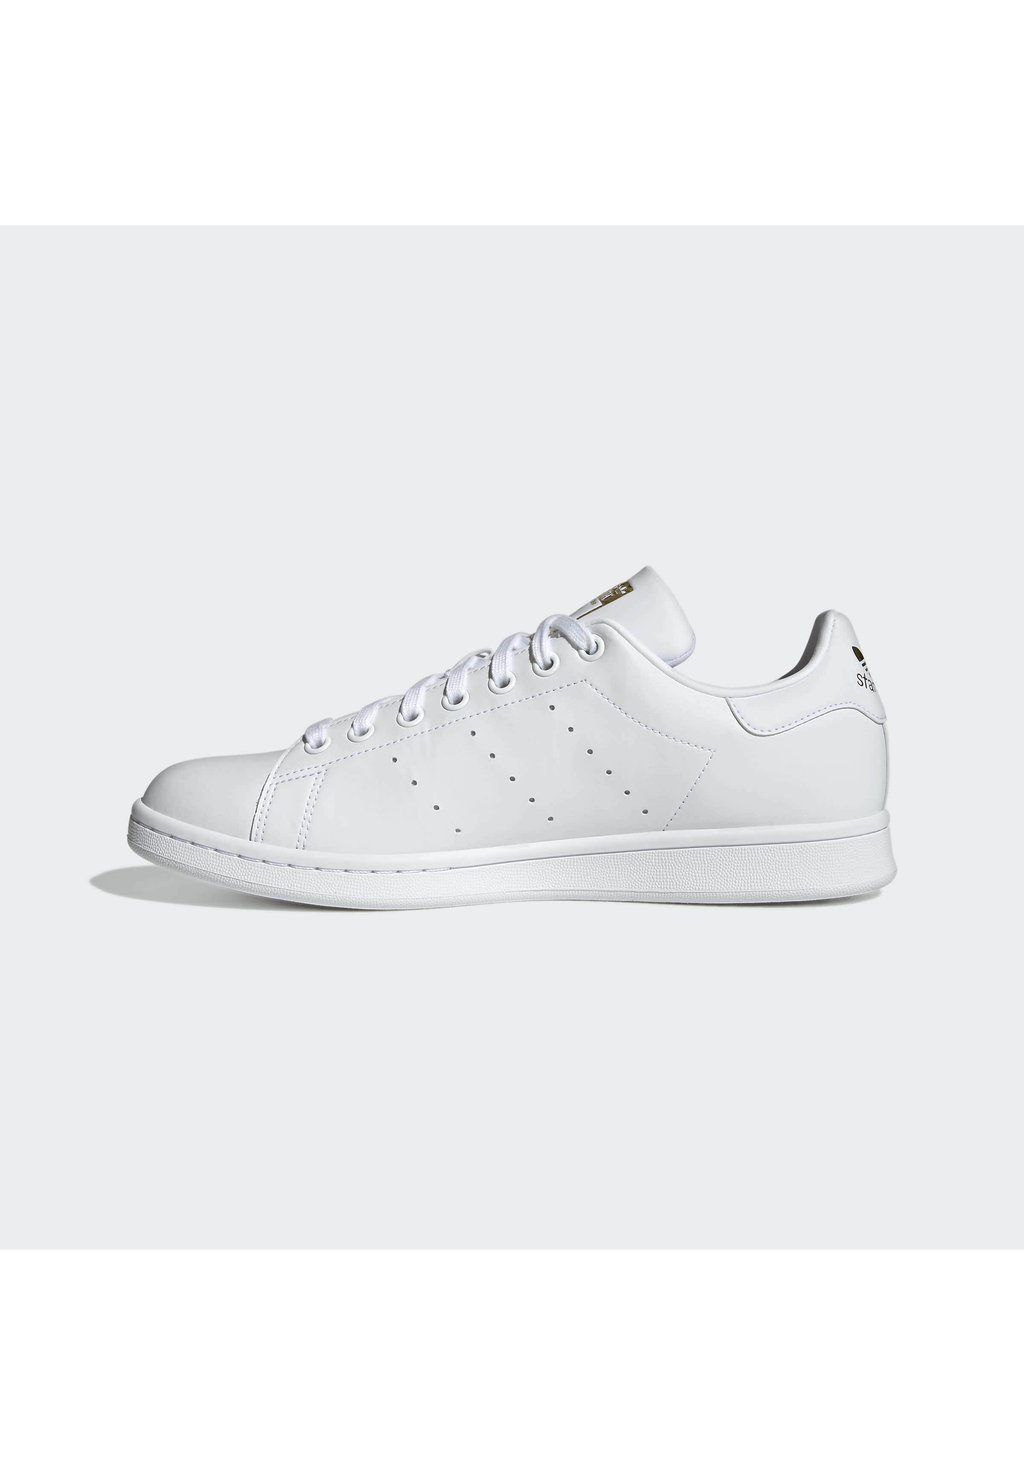 Кроссовки adidas Originals Stan Smith Unisex, ftwr белый / ftwr белый кеды gz1084 adidas grandcourtk ftwr white 33 eu